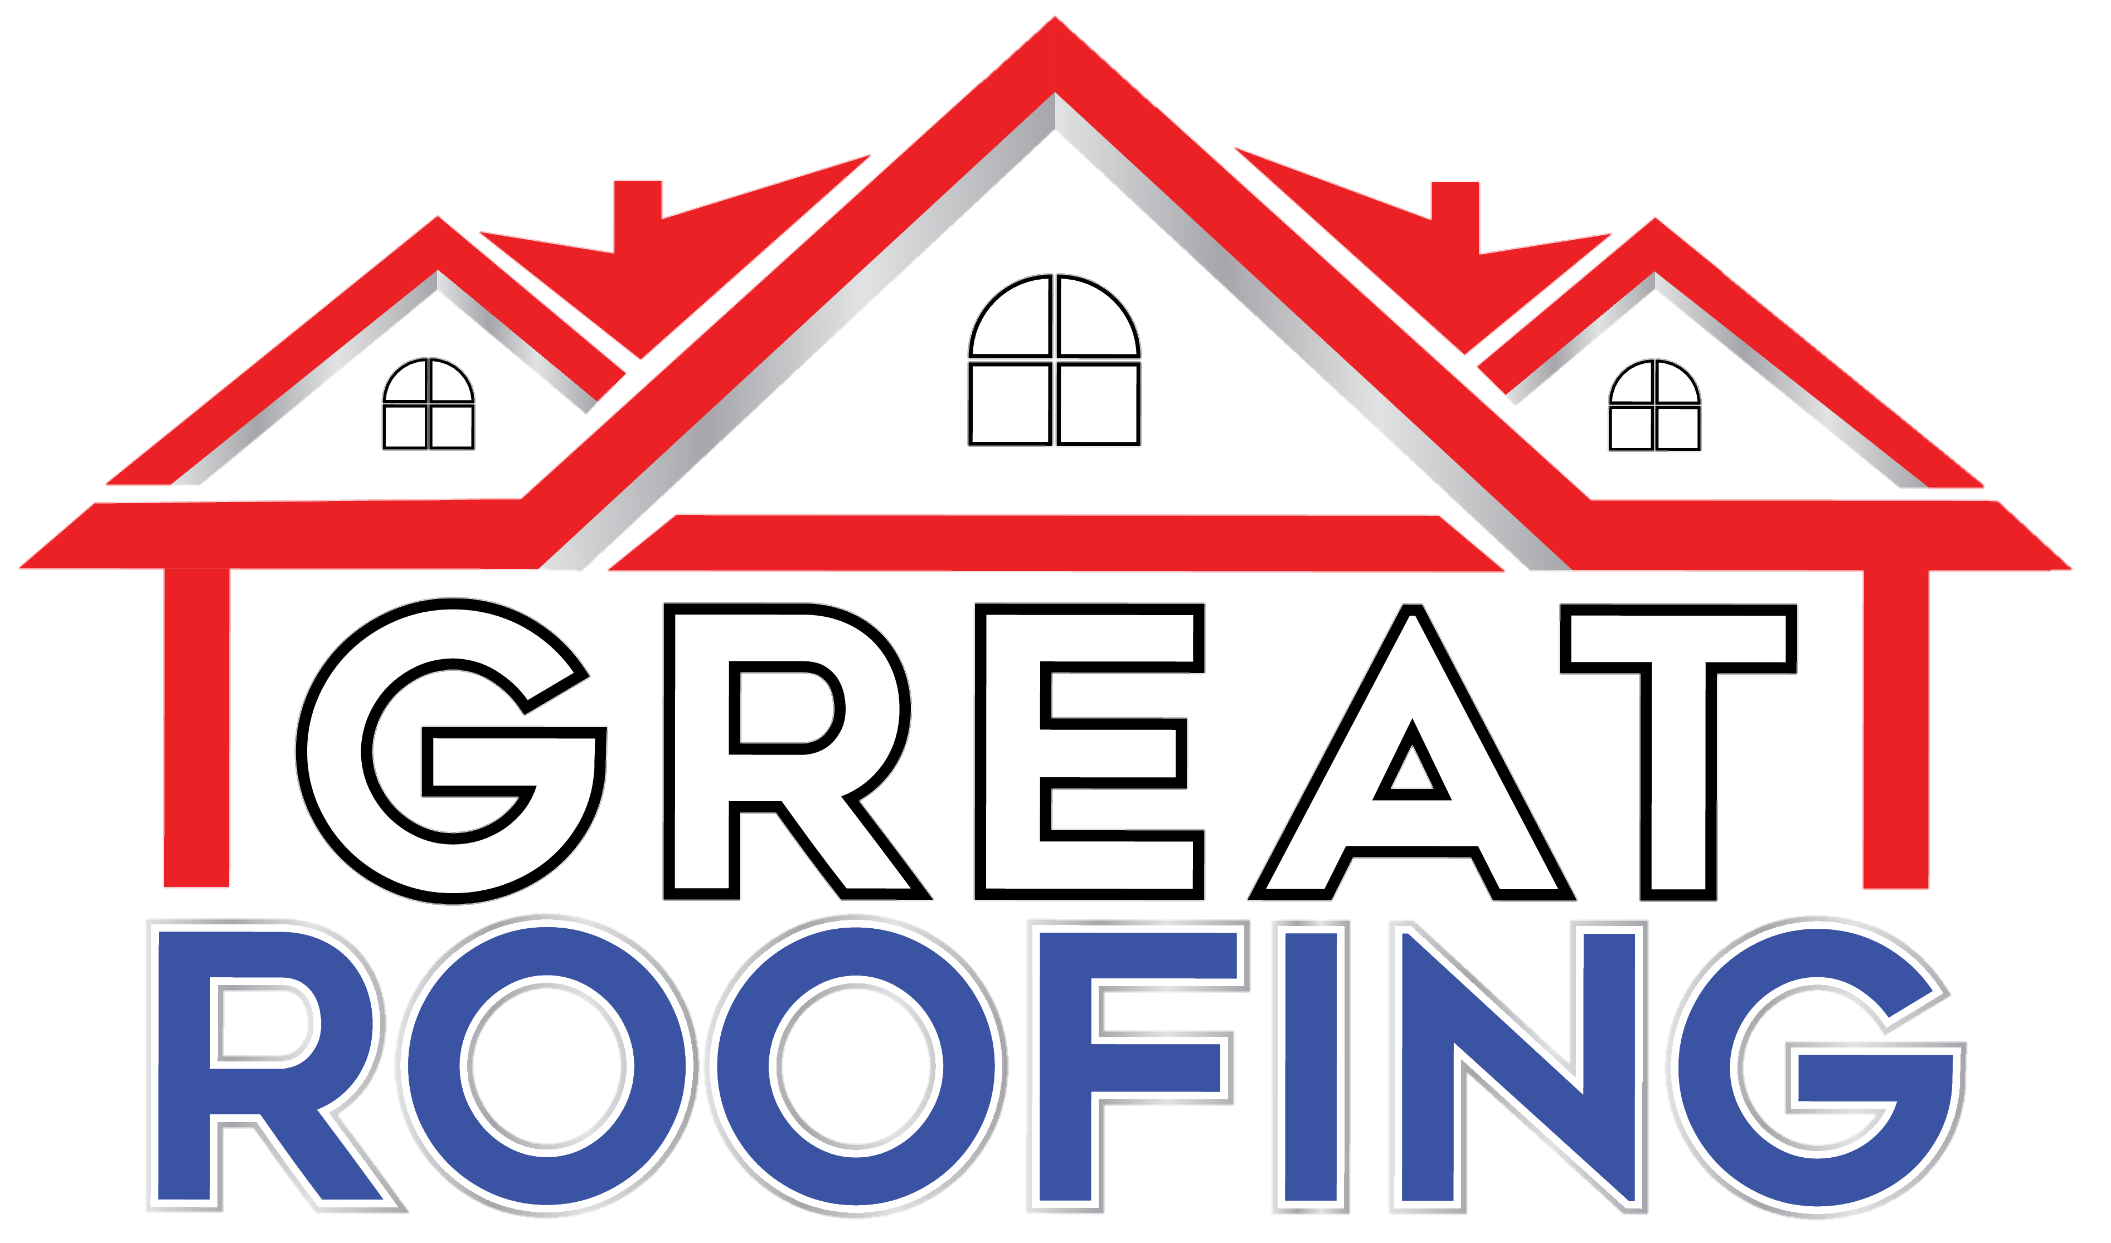 Great Roofing: Joliet Local Roofers